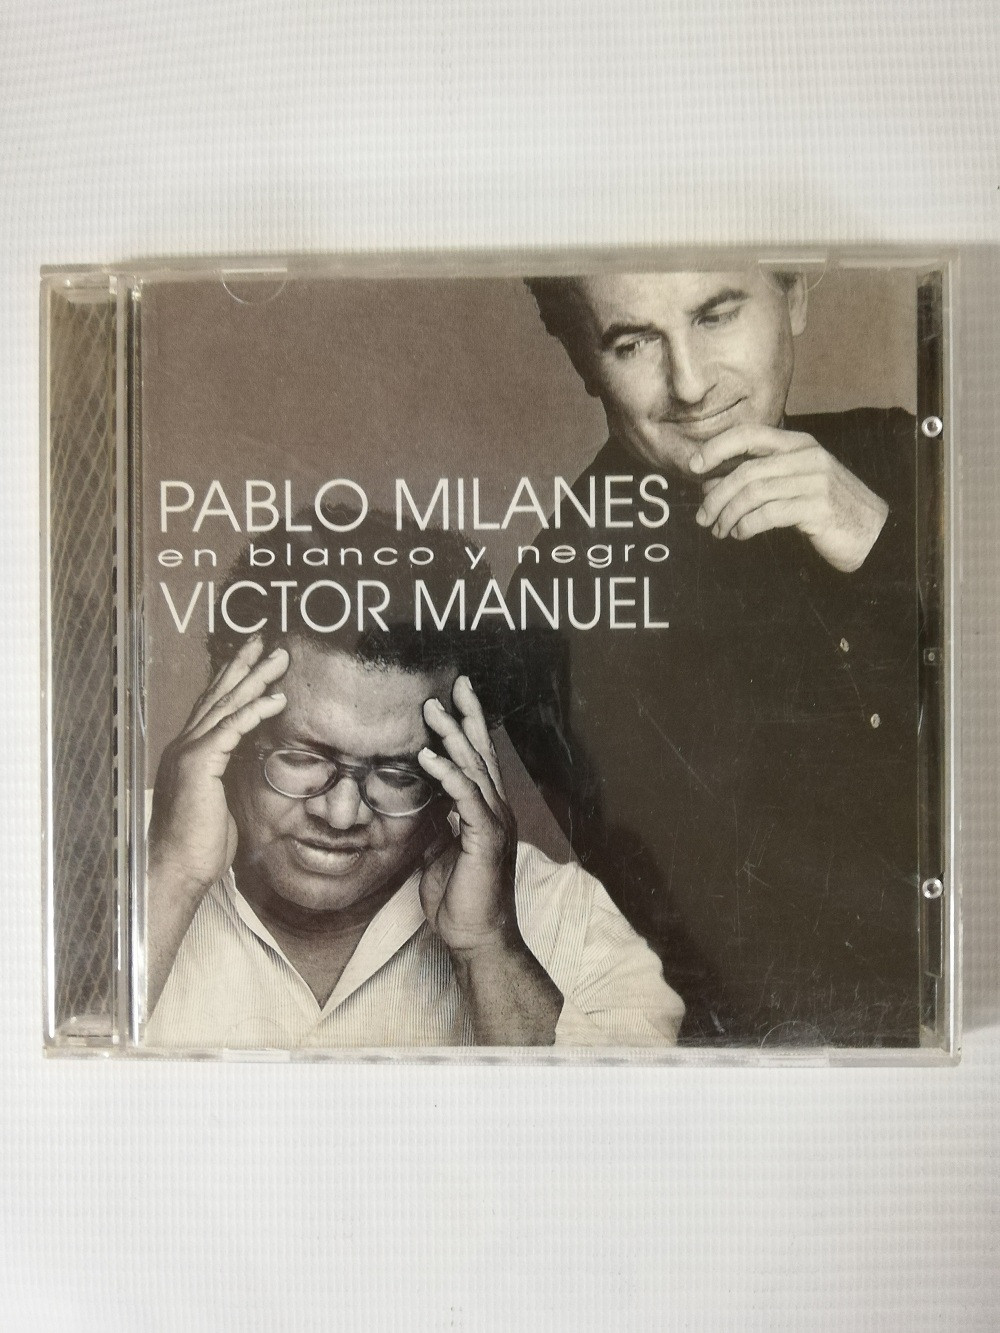 Imagen CD PABLO MILANES Y VICTOR MANUEL - EN BLANCO Y NEGRO 1